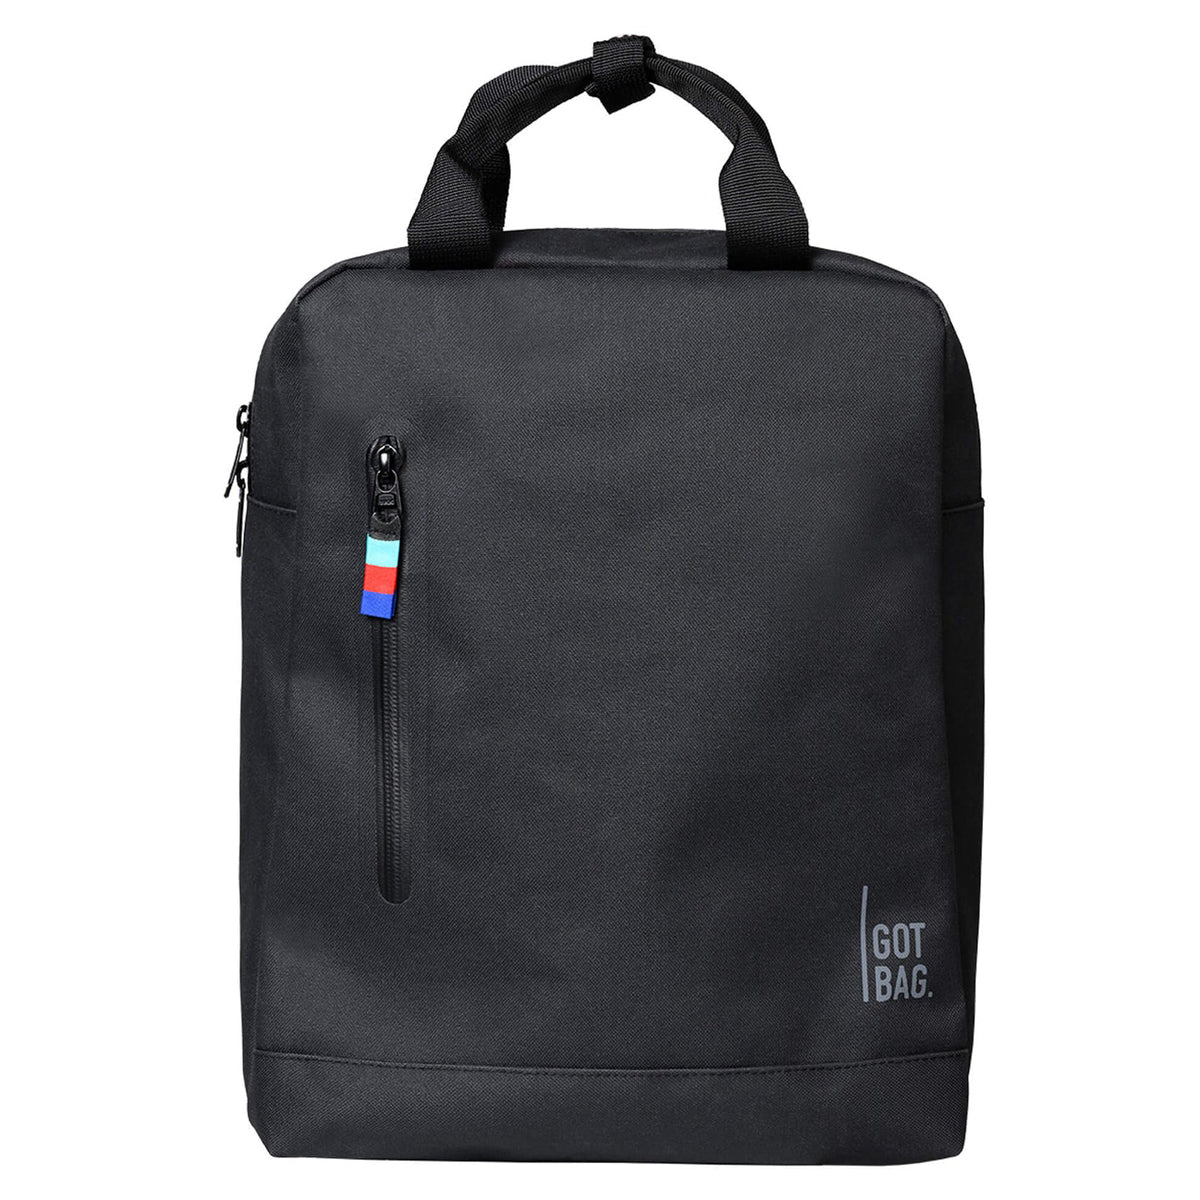 Got Bag Daypack Backpack - Black image 1